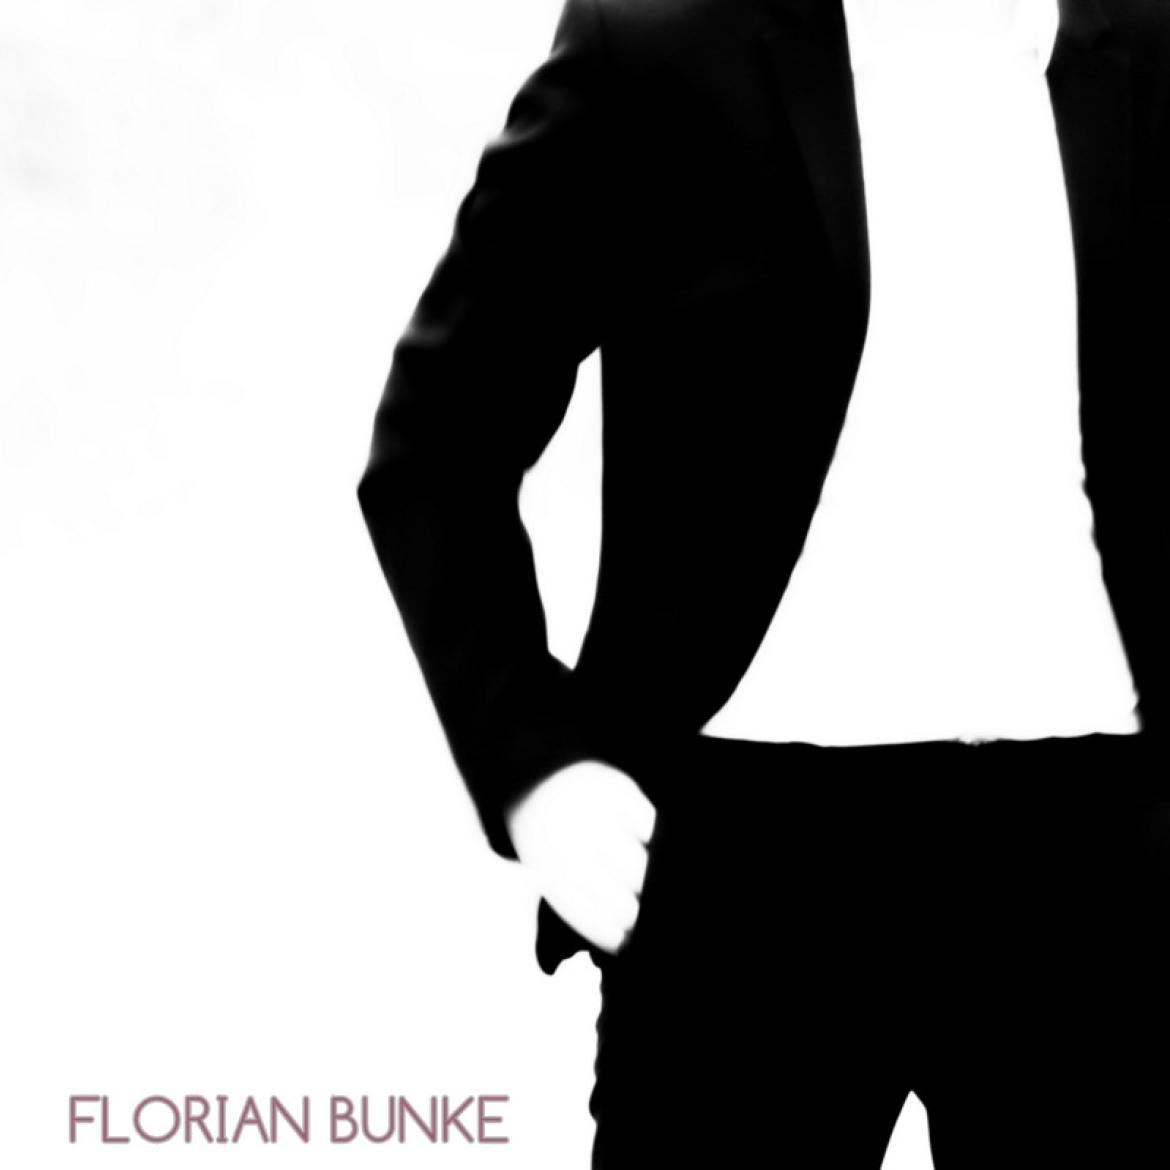 Florian Bunke